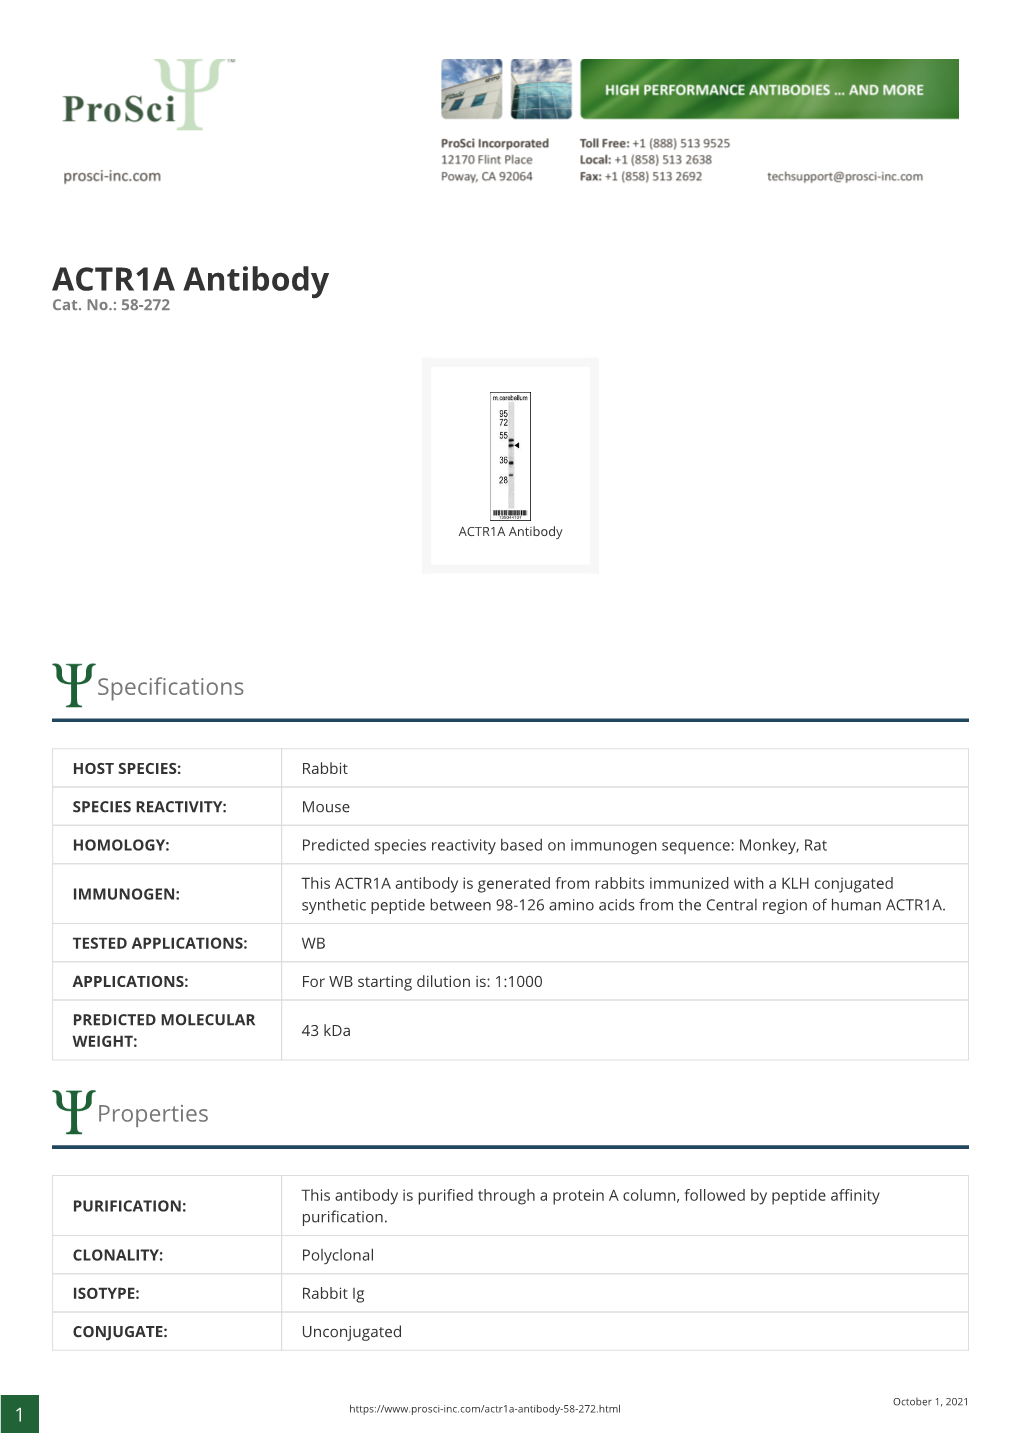 ACTR1A Antibody Cat